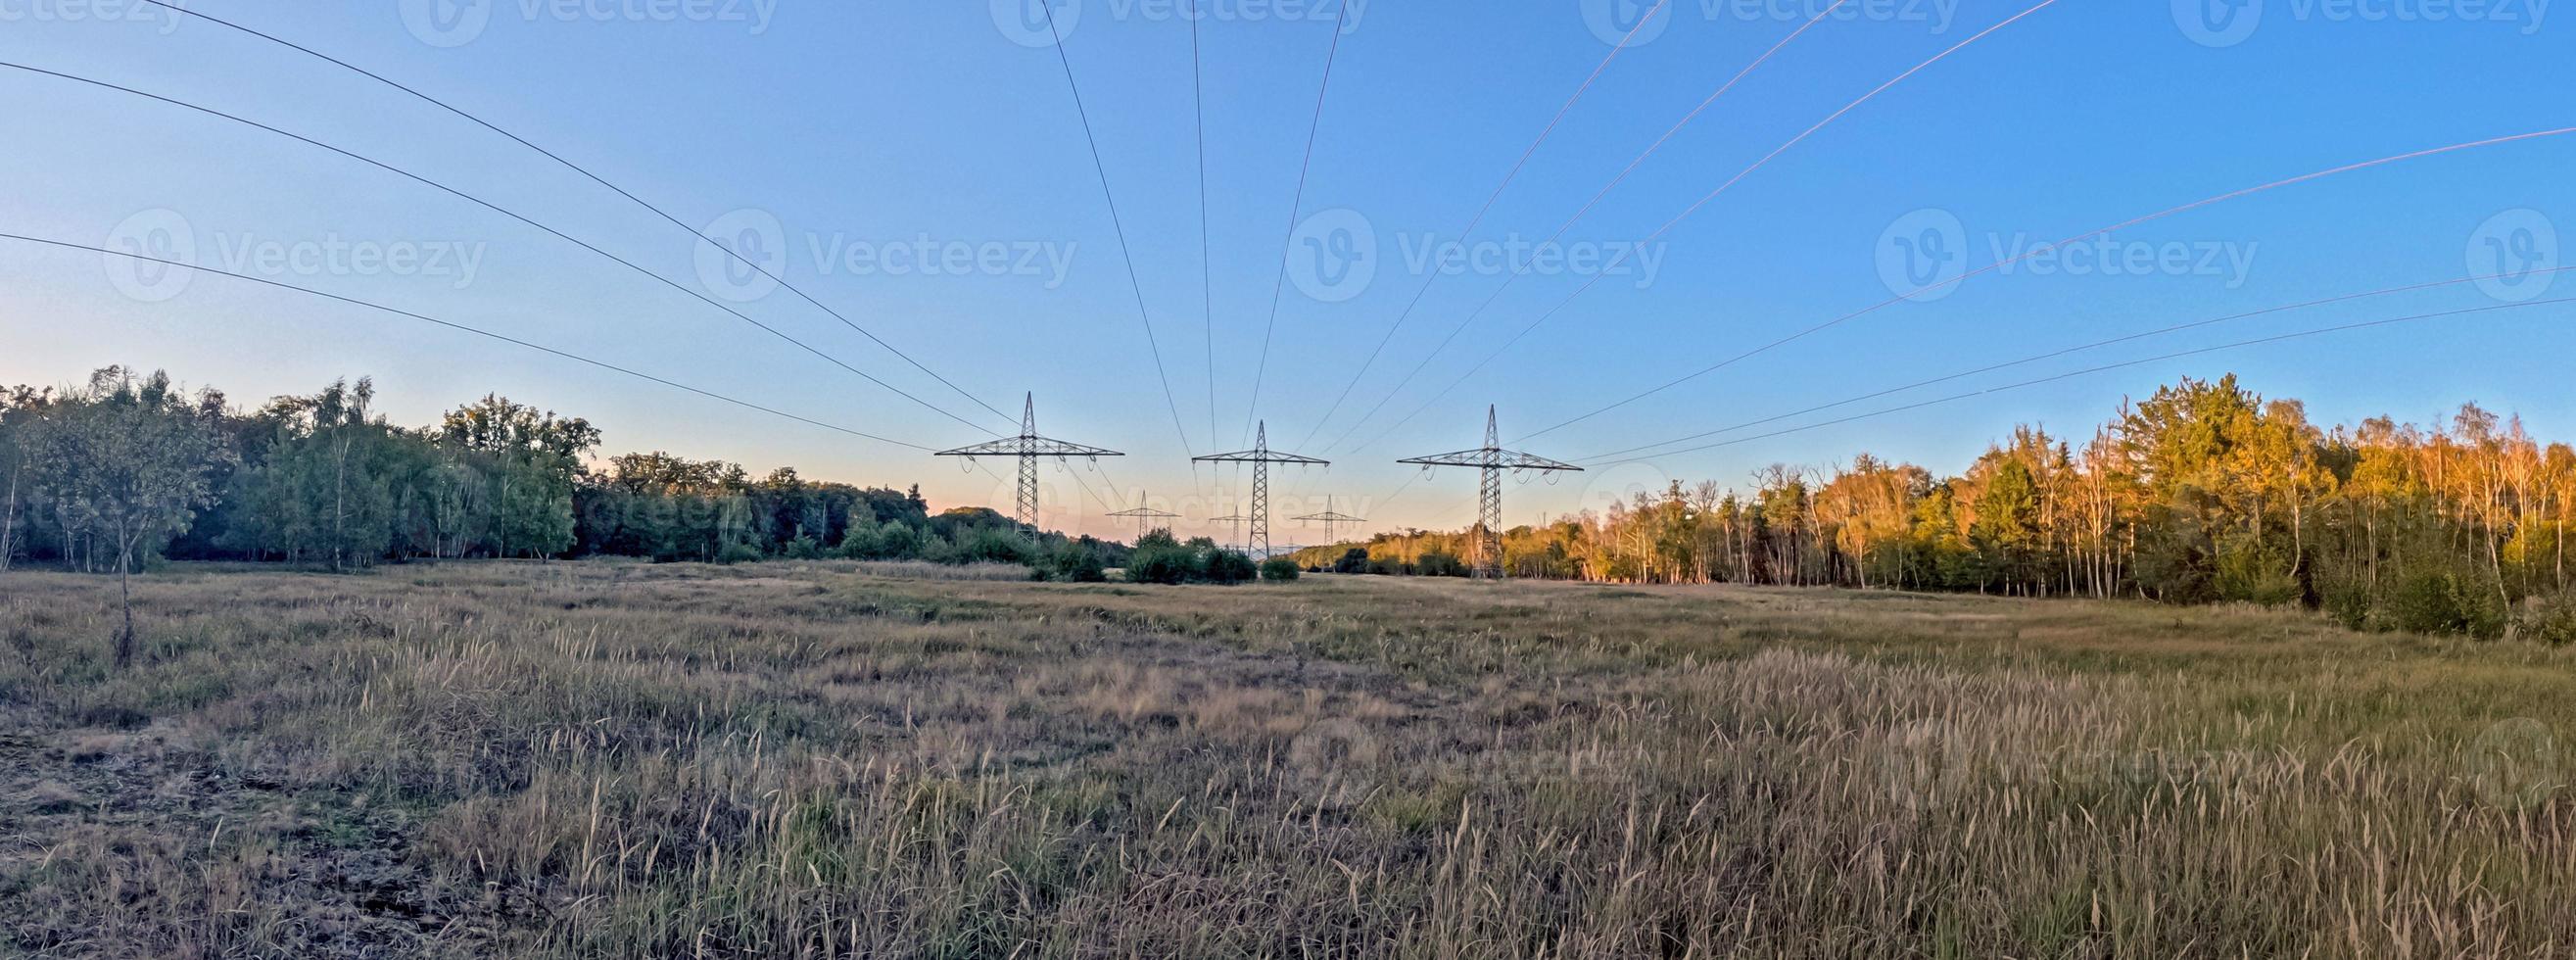 vue panoramique d'une ligne électrique le long d'une coupe dans une forêt photo